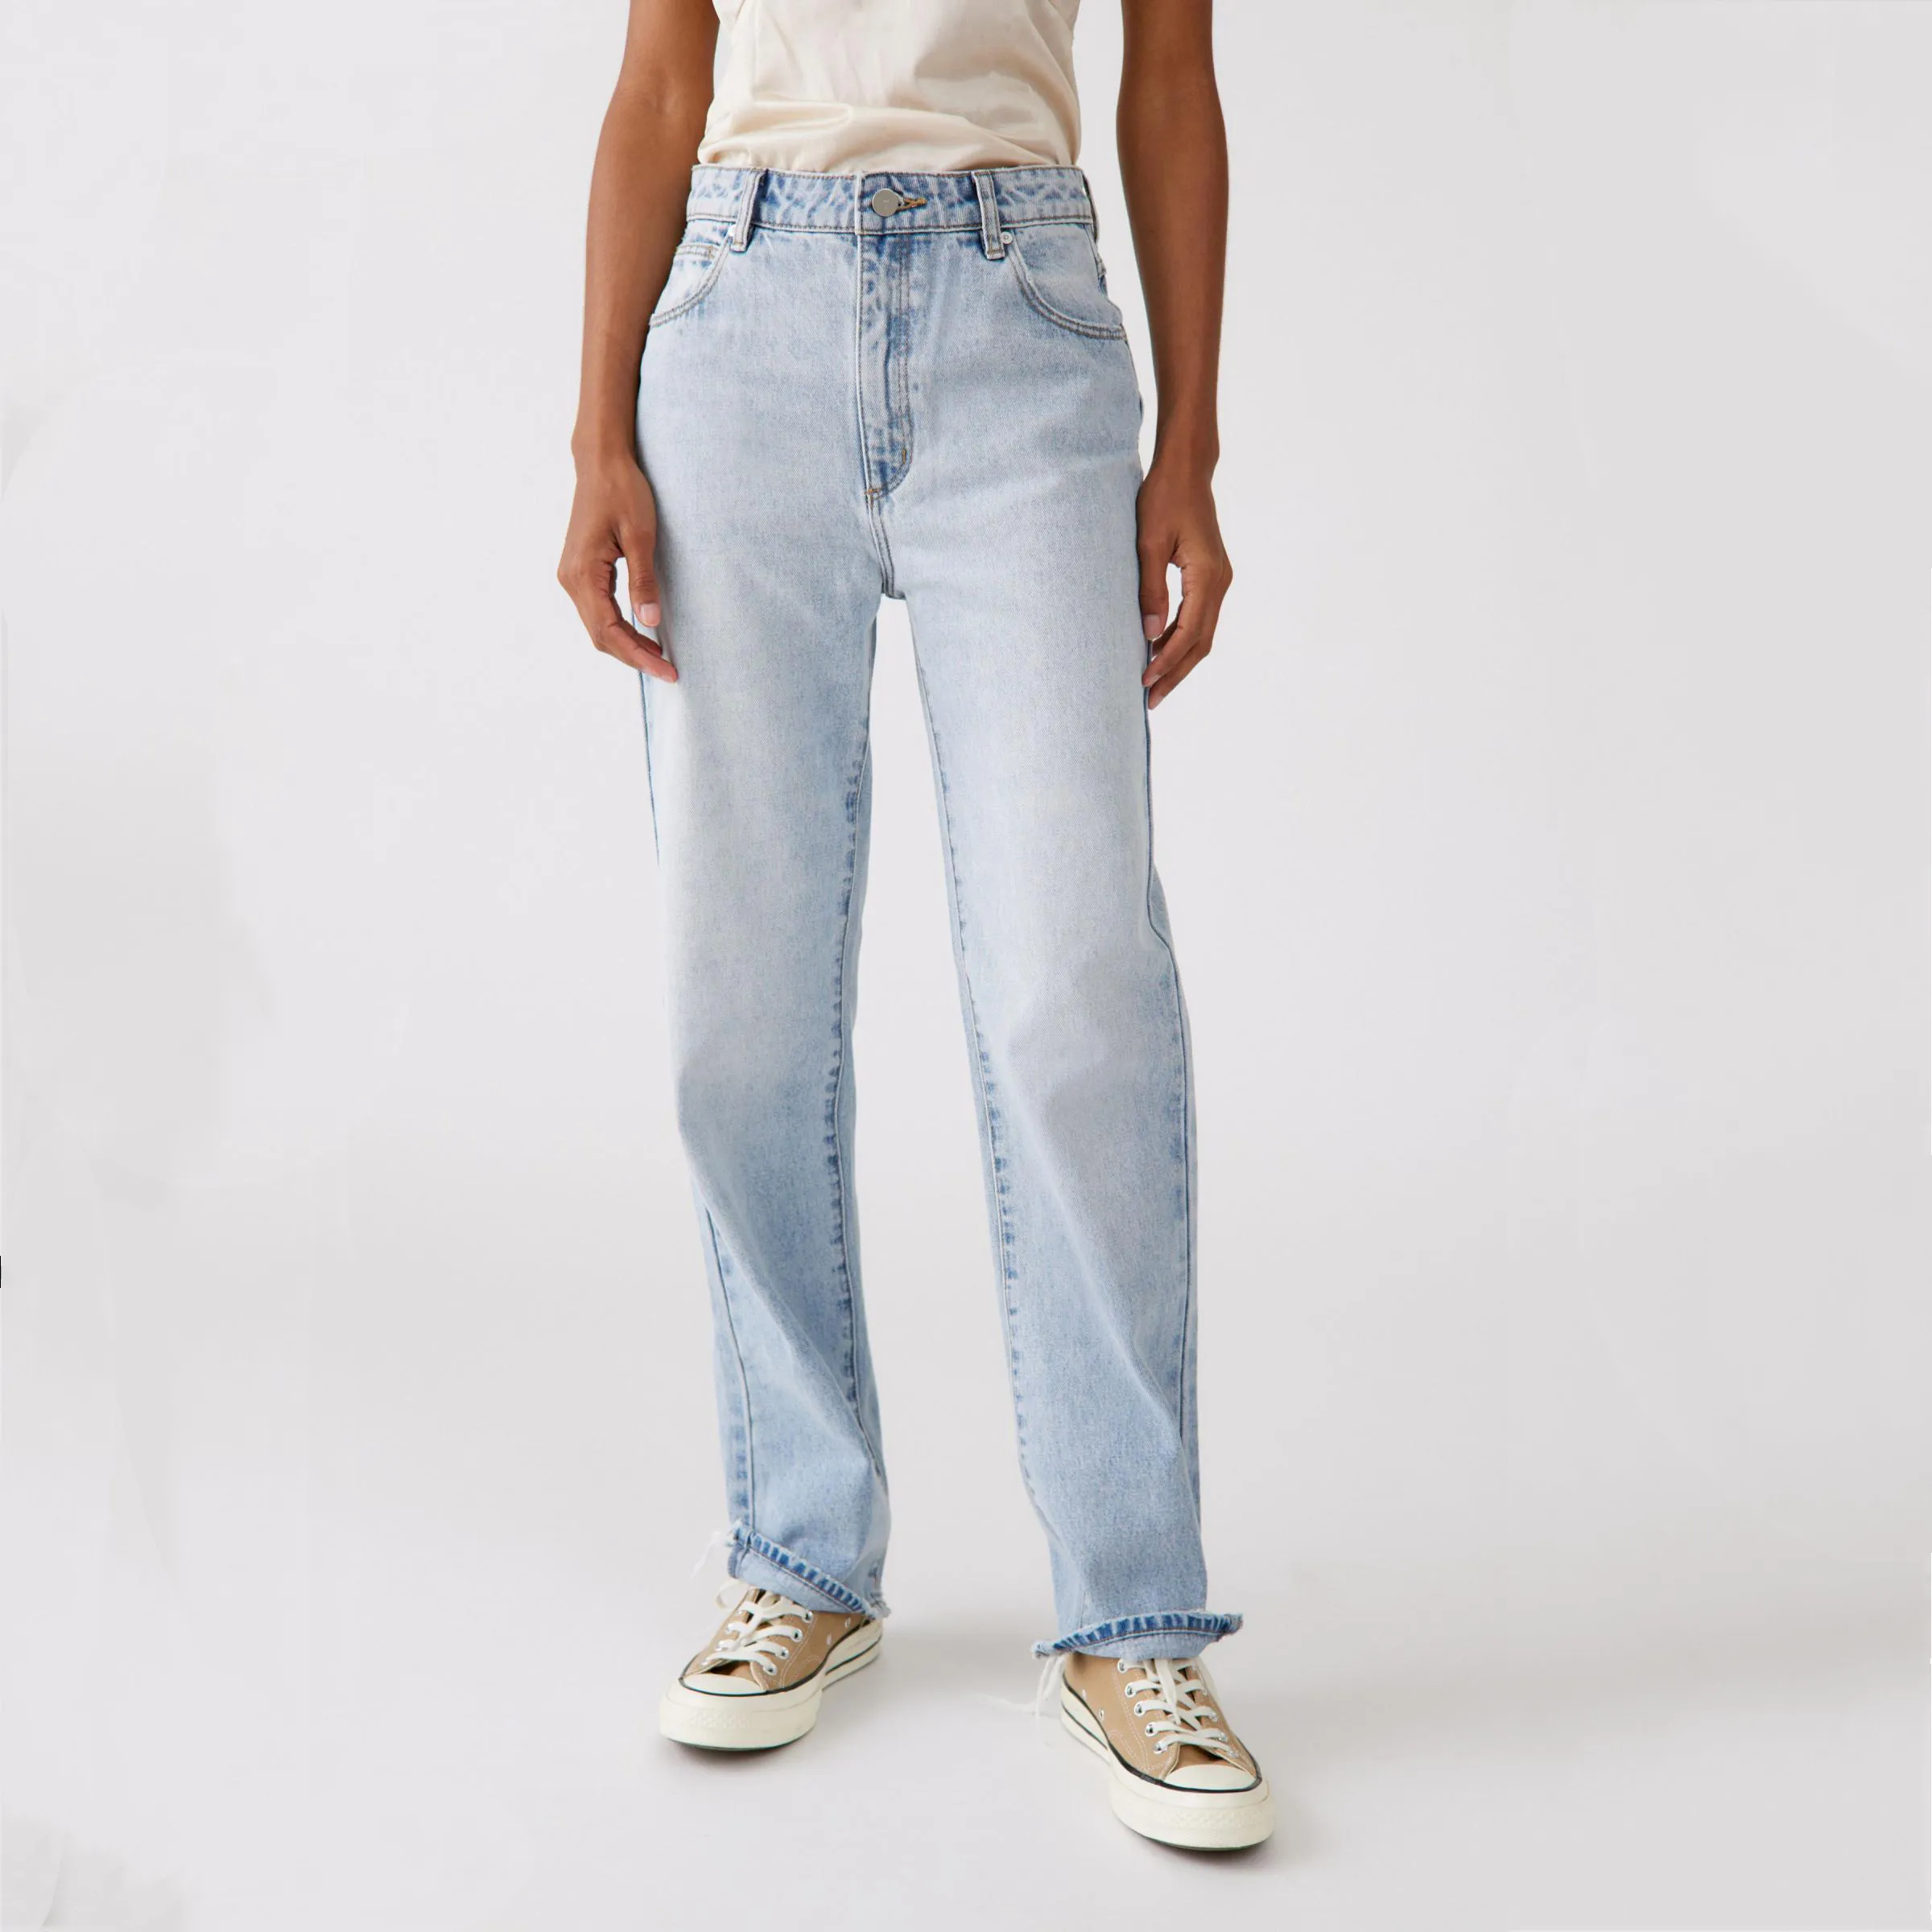 Calça jeans feminina casual, calça jeans de cintura alta com perna reta